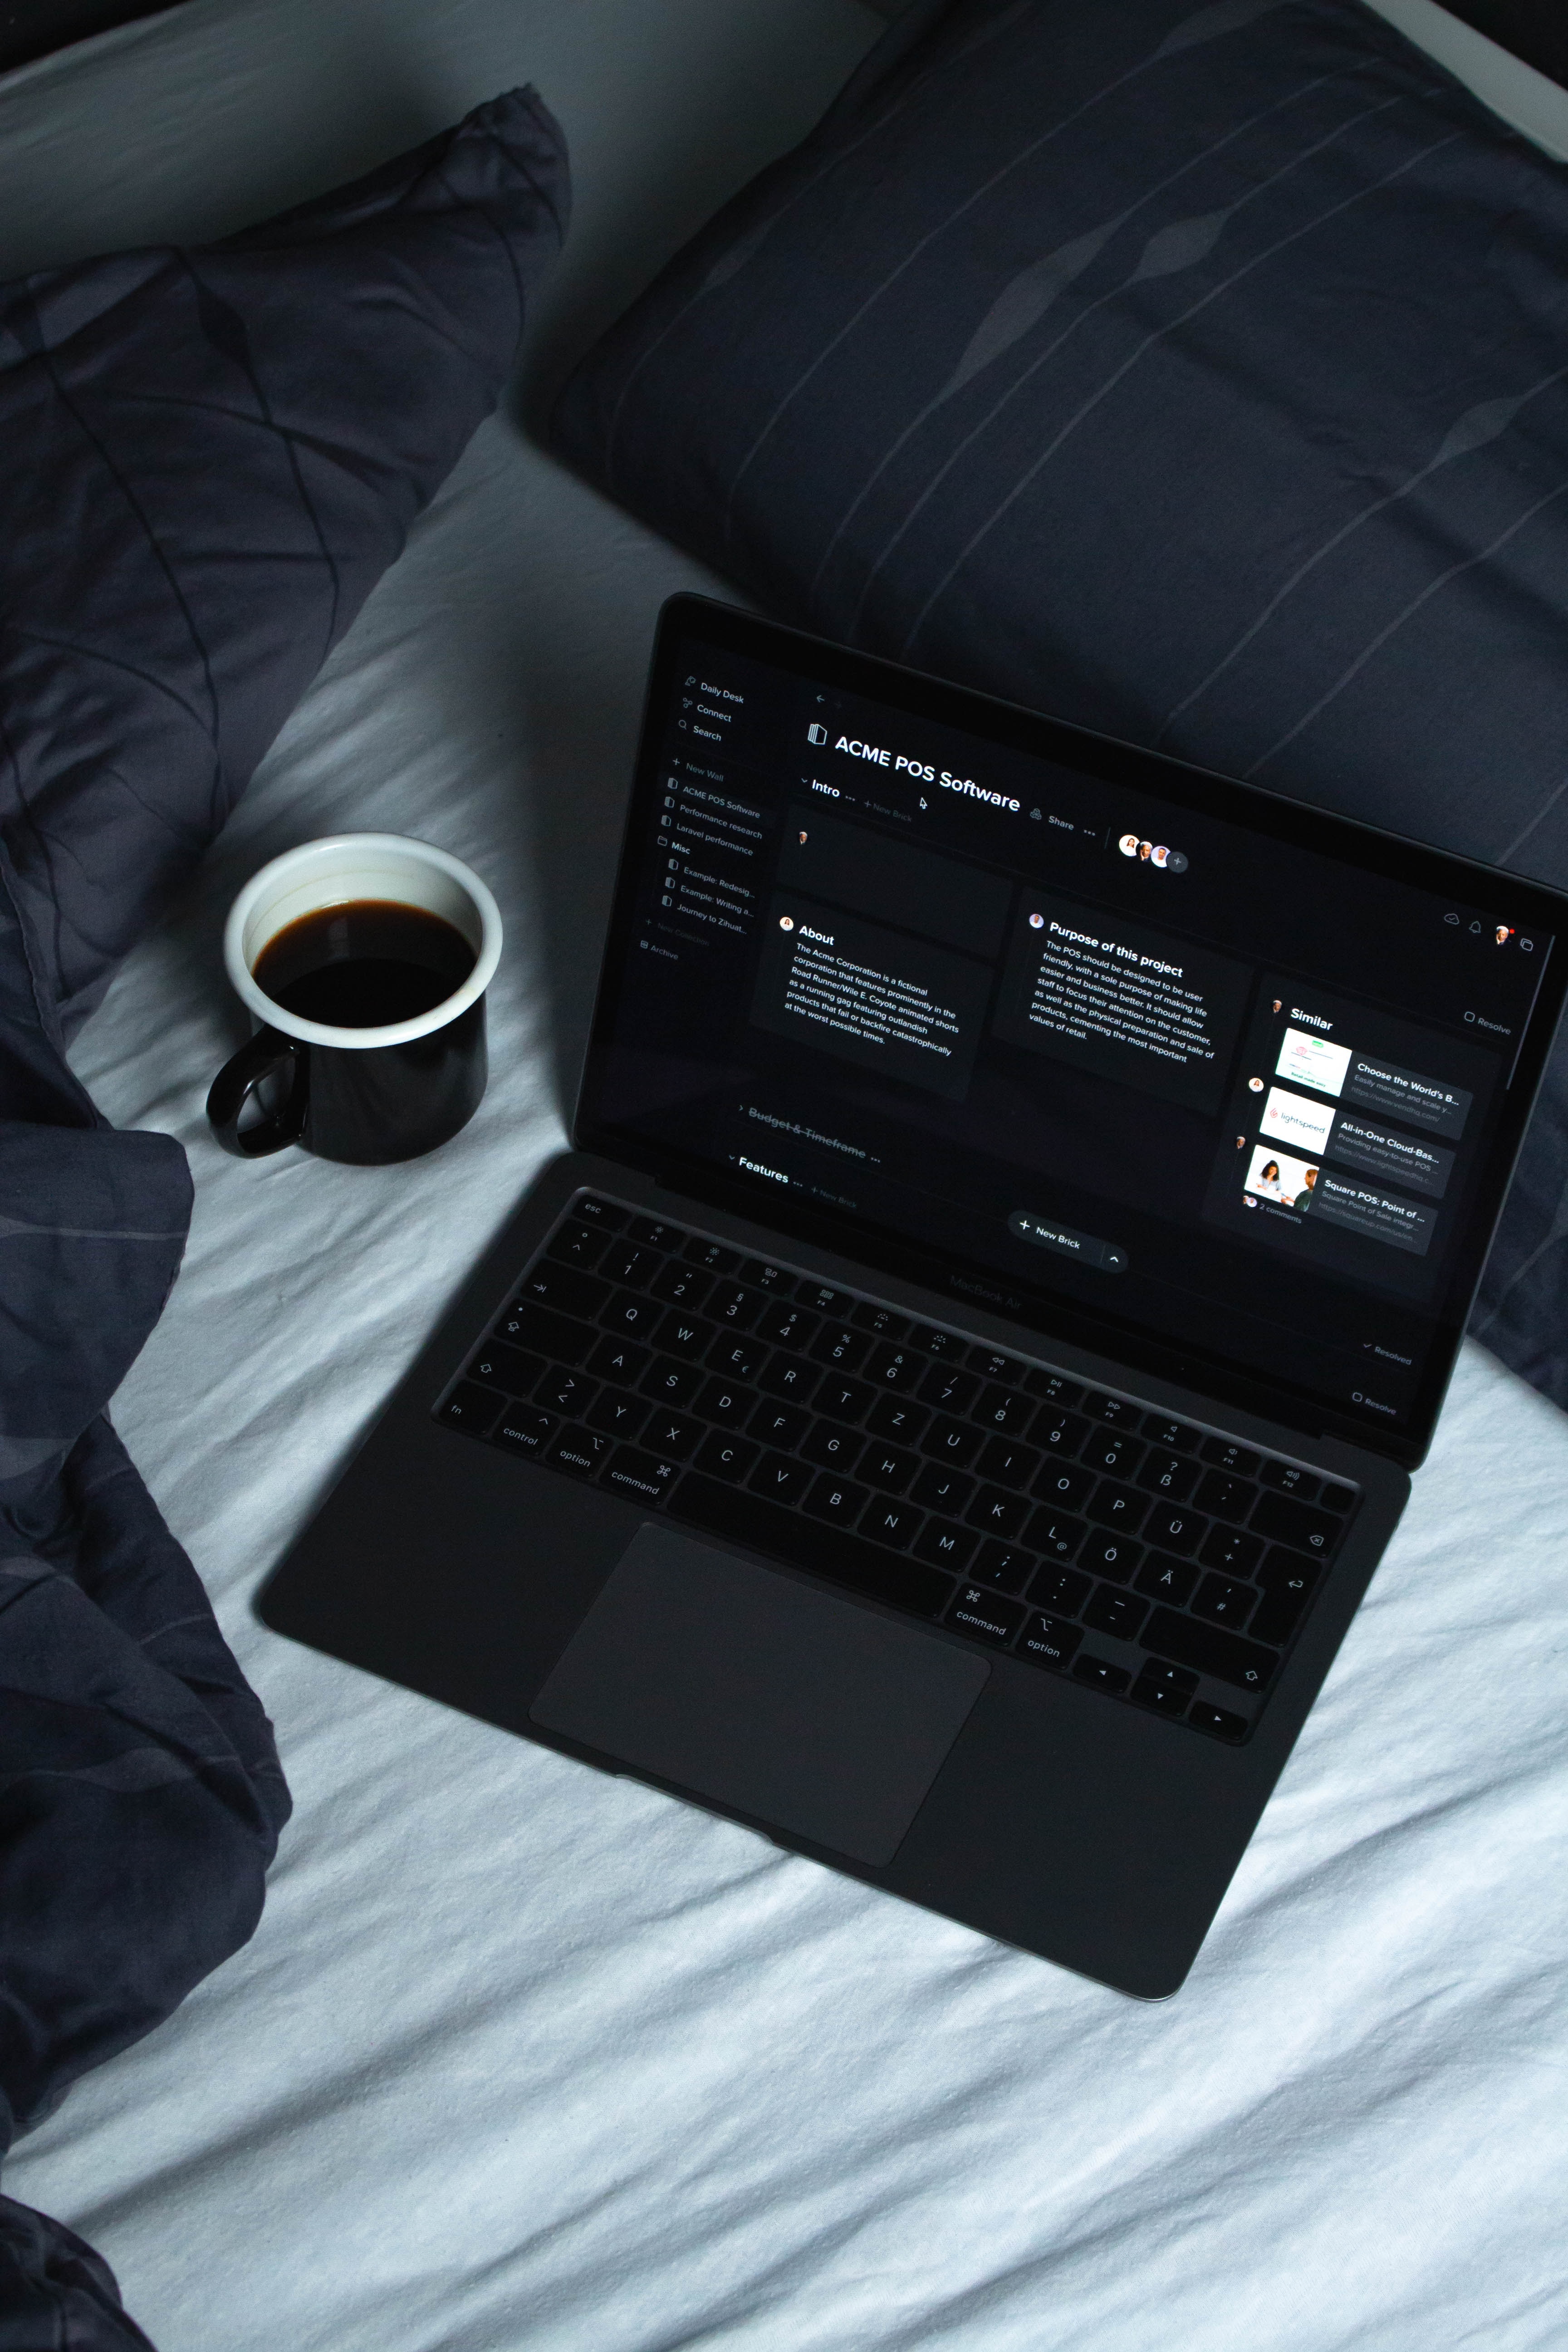 Notebook com tela de agenda de trabalho aberta, posicionado em cima da cama ao lado de uma xícara preta contendo café dentro